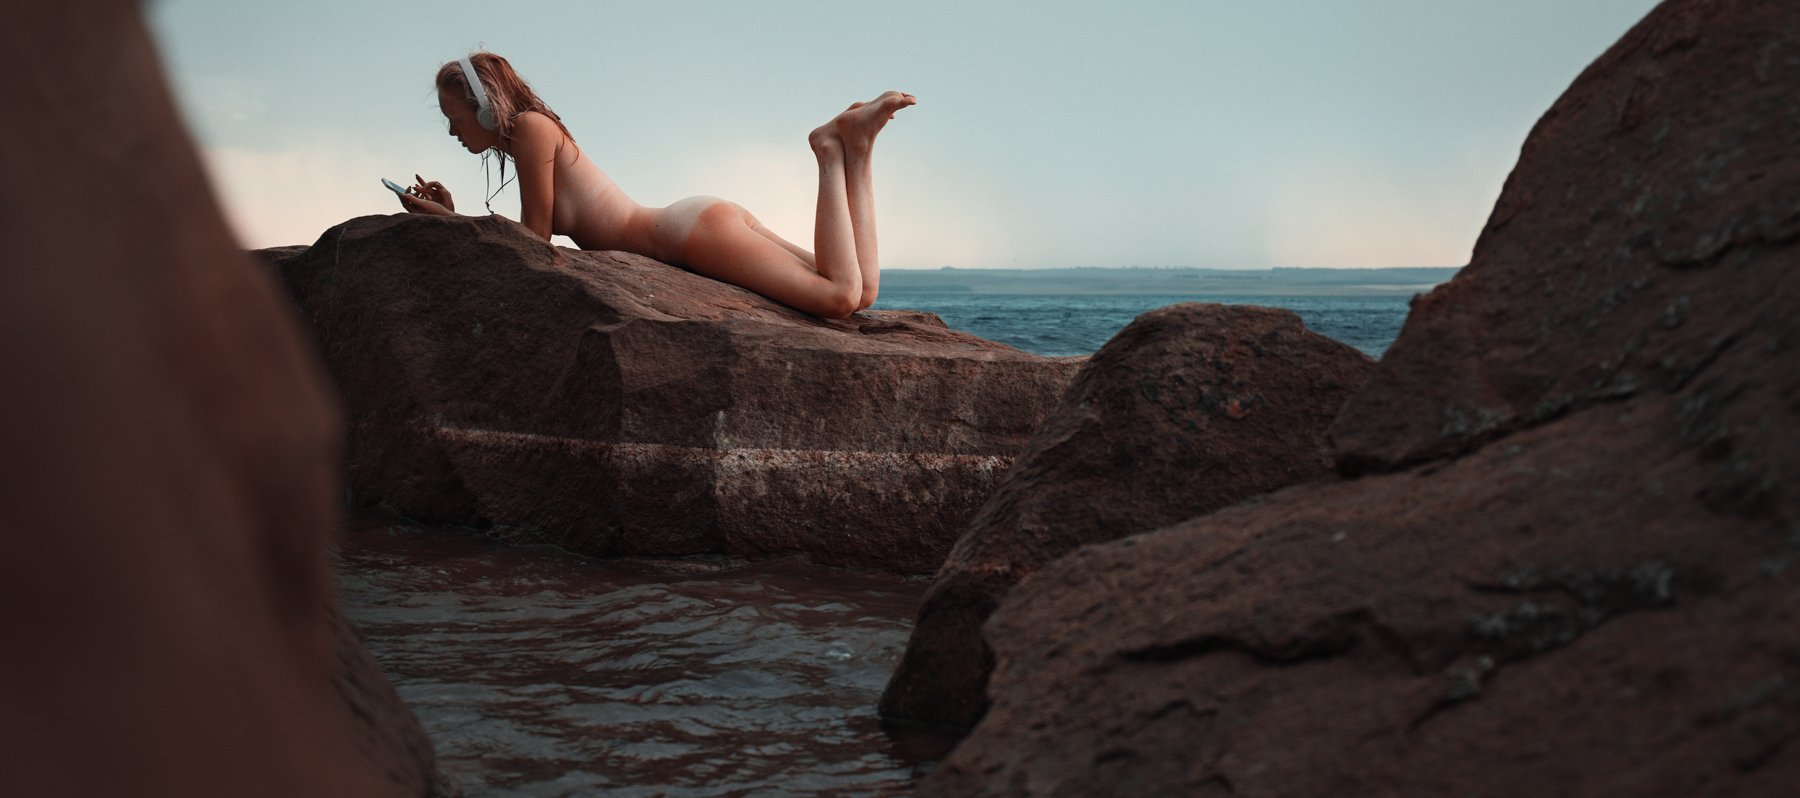 girl, nude, lake, naked, summer, water, rock, rocks, music, silence, phone, aslikul, Роман Филиппов